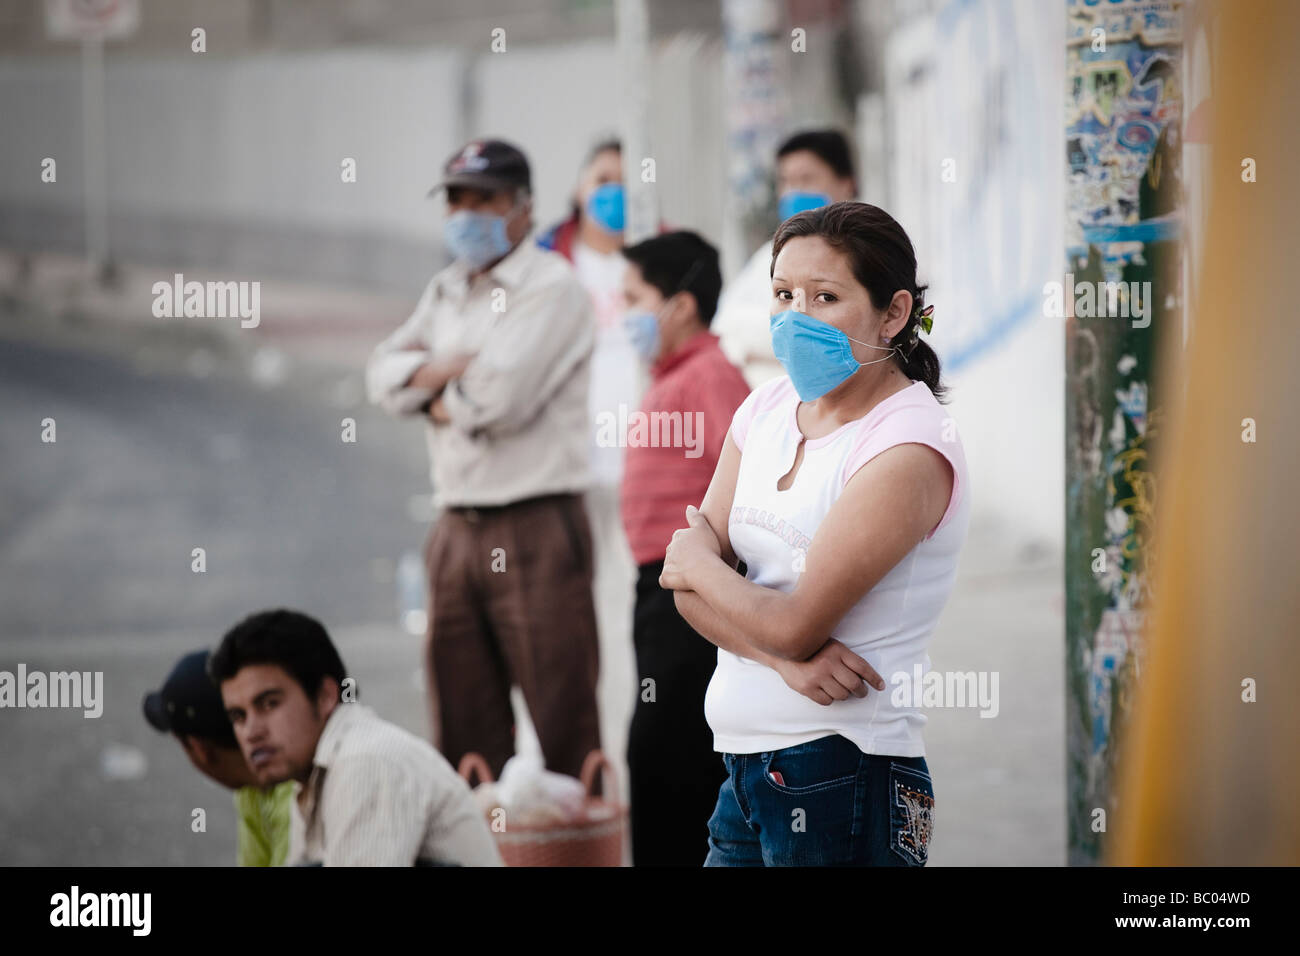 Menschen tragende Masken stehen an einer Bushaltestelle während der Schweinegrippe-Epidemie in Mexiko-Stadt, DF, Mexiko. Stockfoto